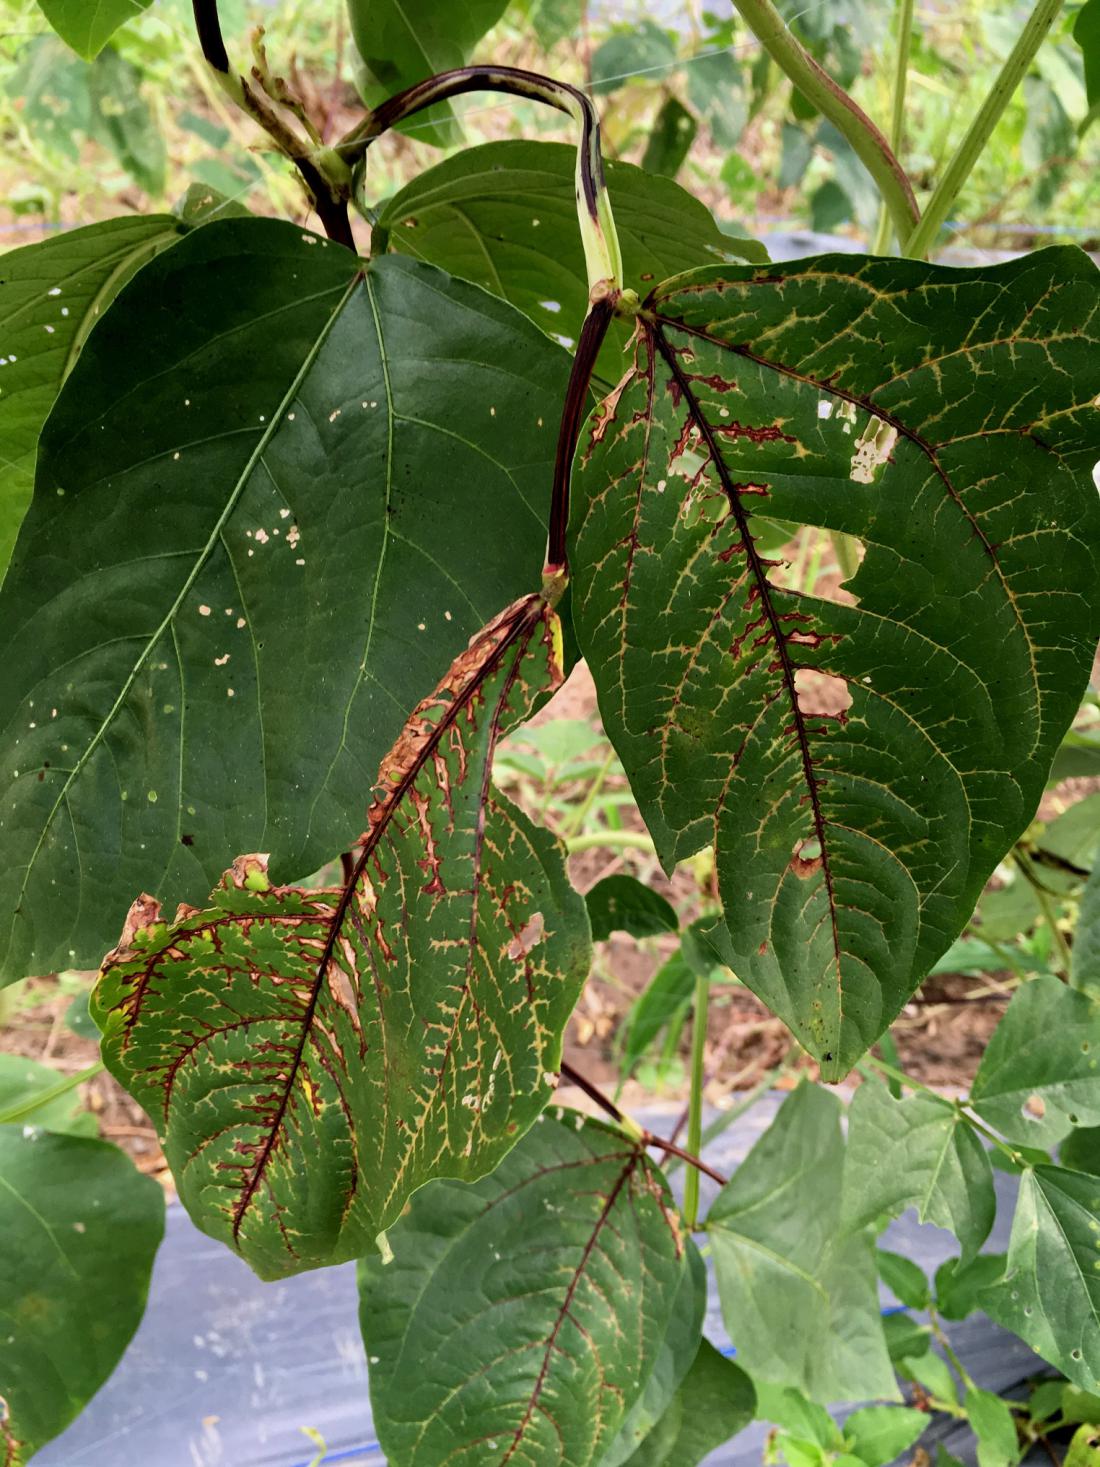 Pri vdrti fižolovi pegavosti opazimo rdečerjave ožige na listnih žilah. Foto: Plant Pathology/Shutterstock